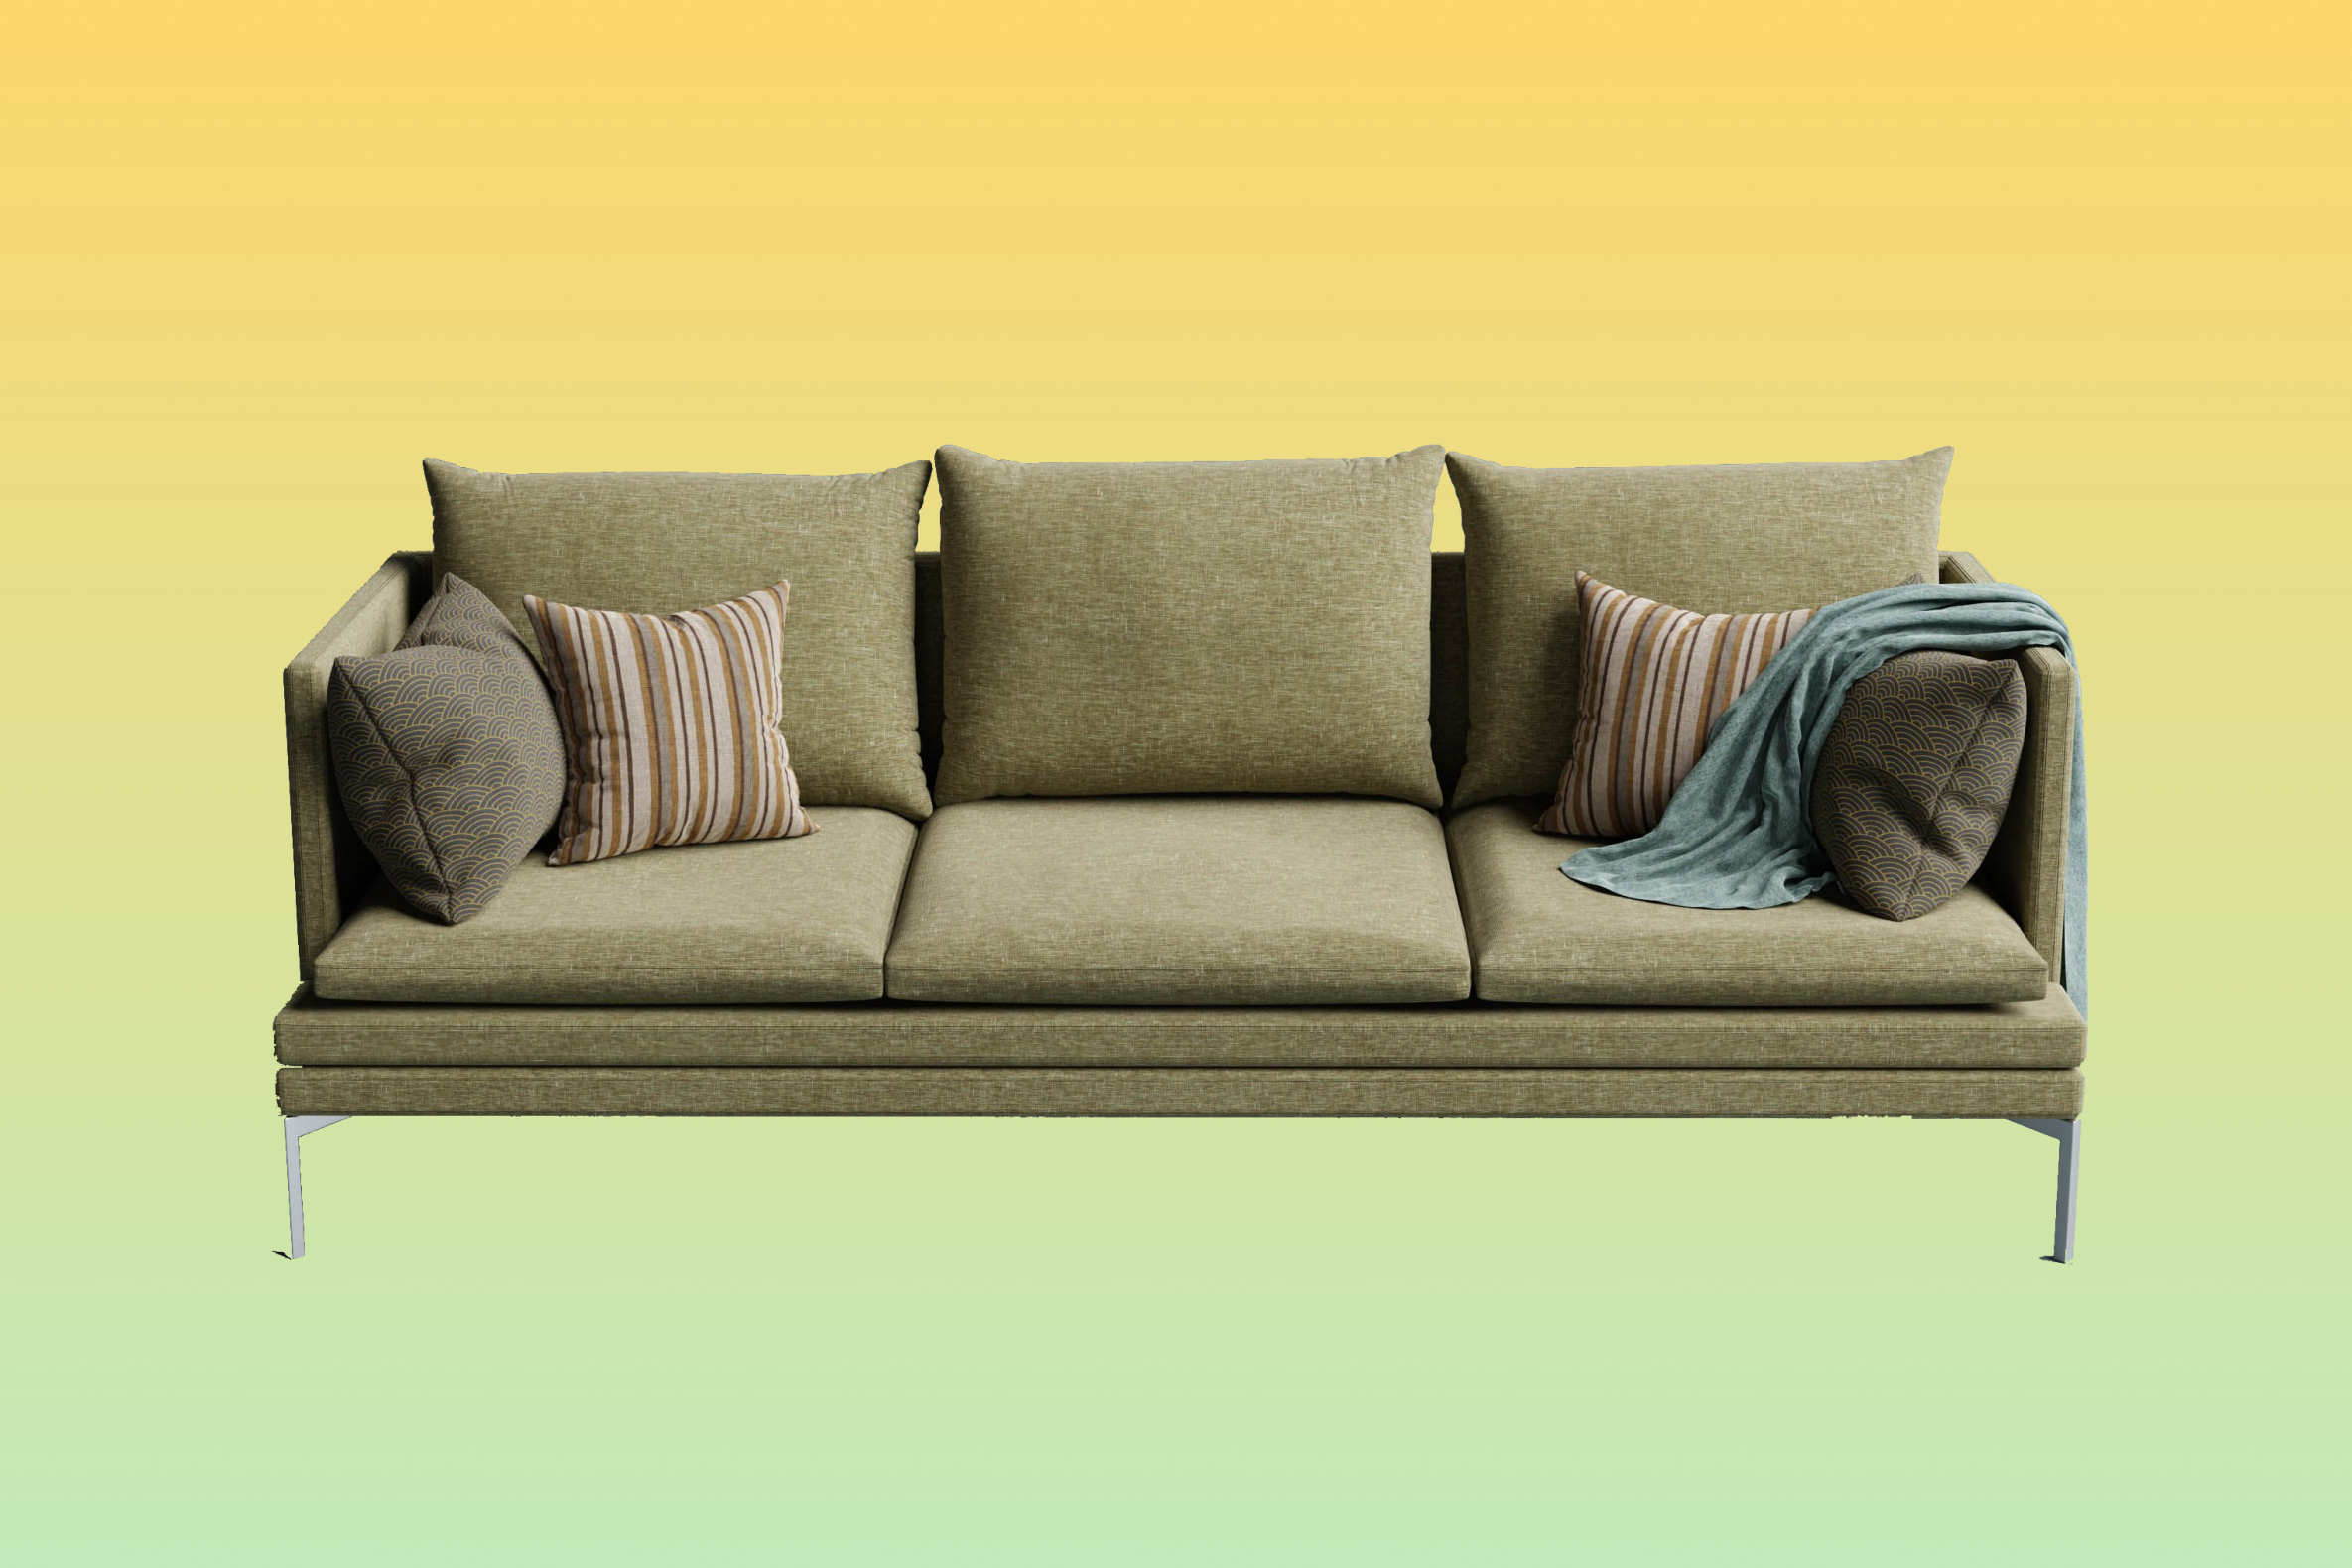 Обновляем старый диван без перетяжки: 9 интересных и полезных лайфхаков